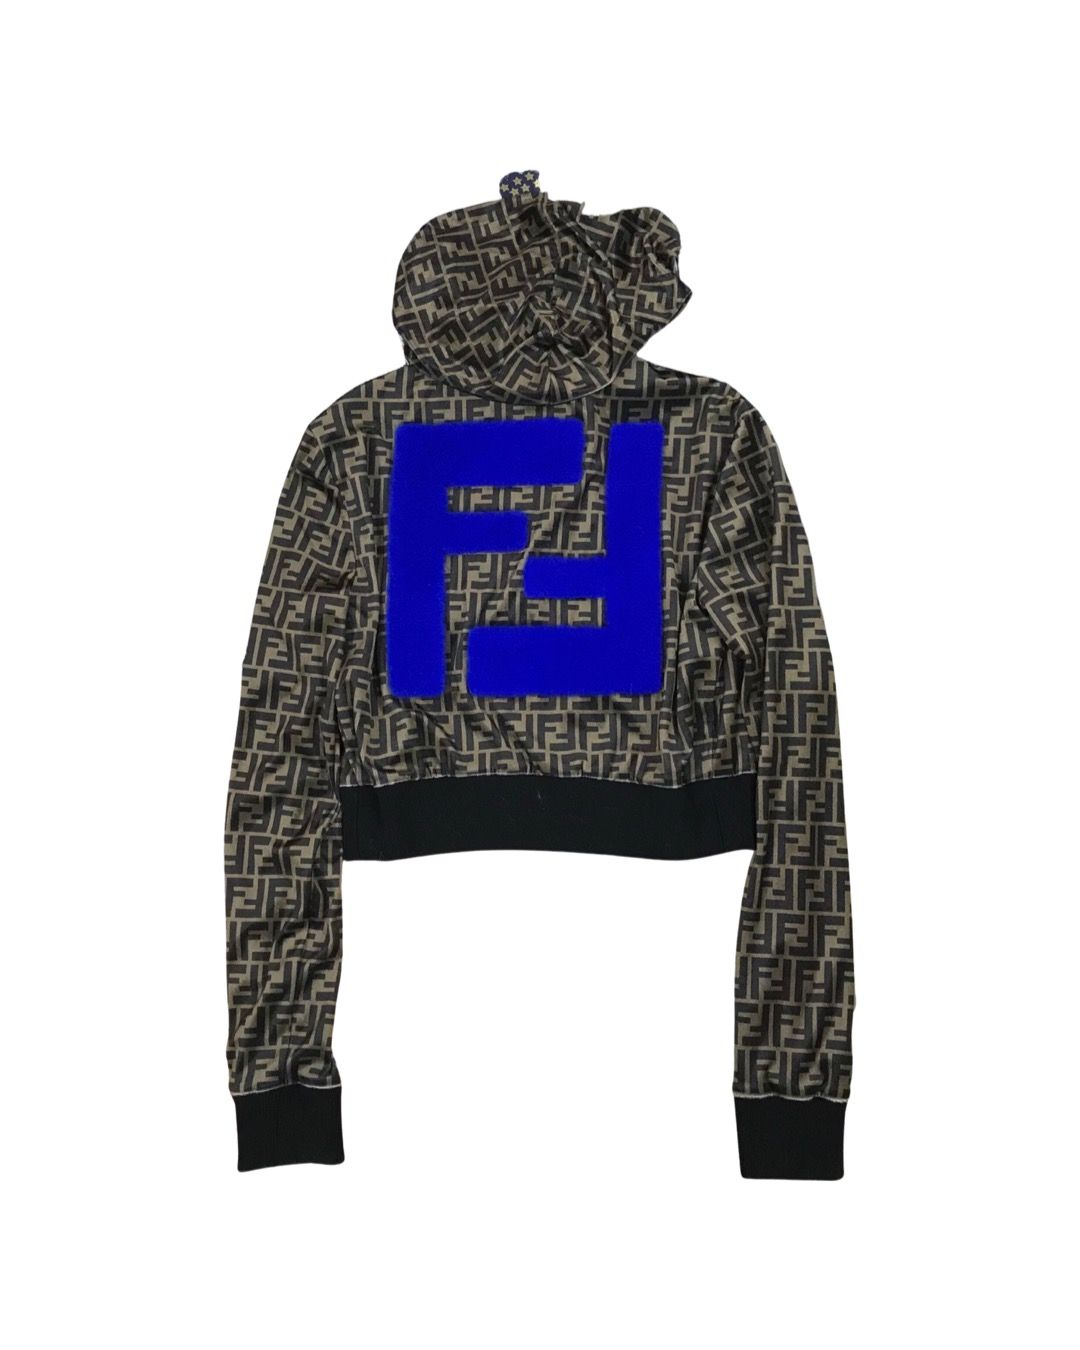 Fendace FF logo crop zip up hoodie - 2